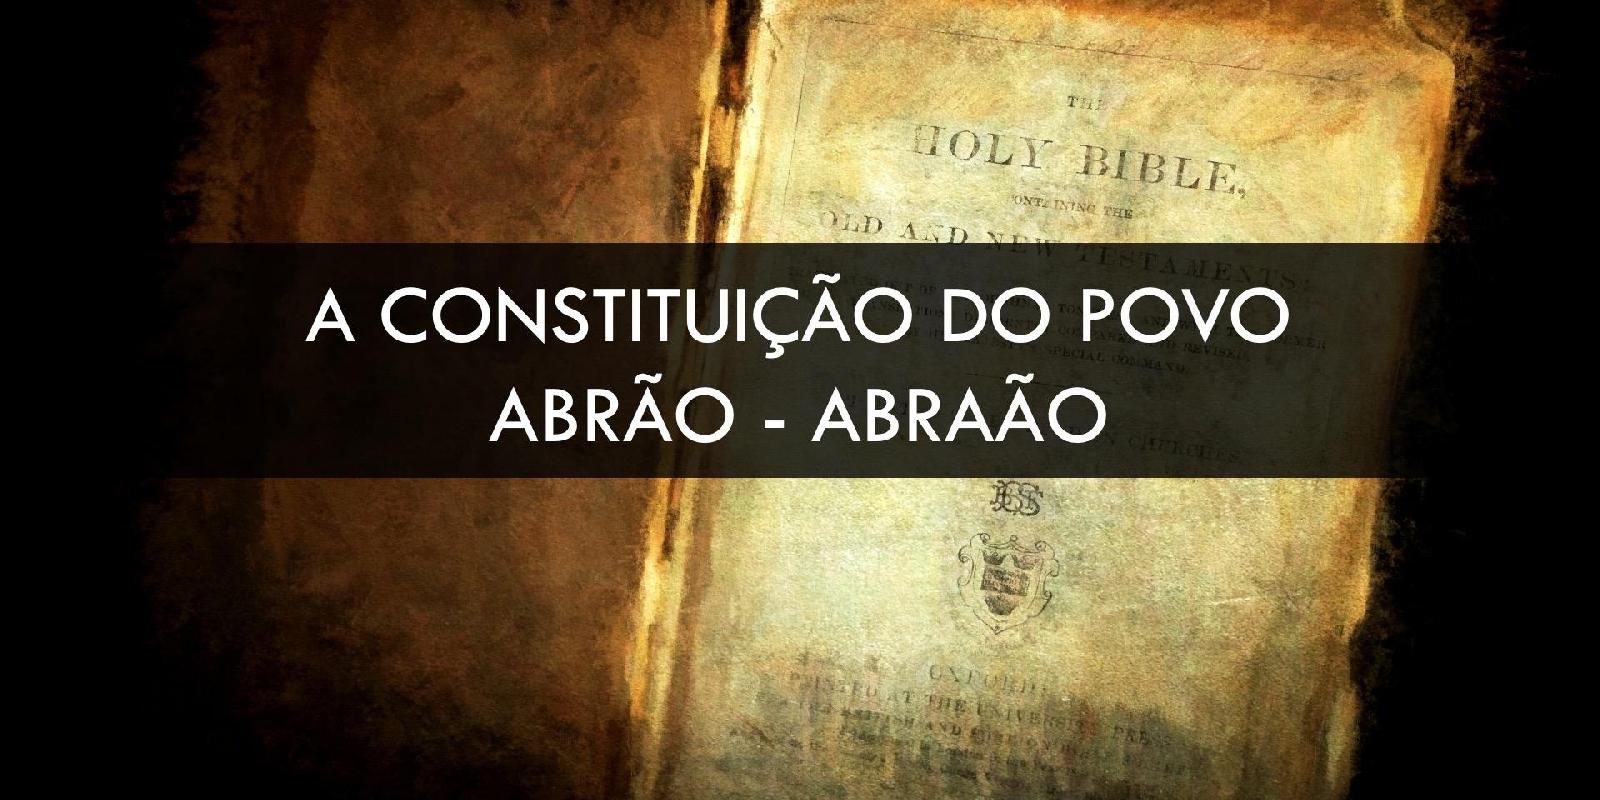 Constituição do Povo - Abrão-Abraão